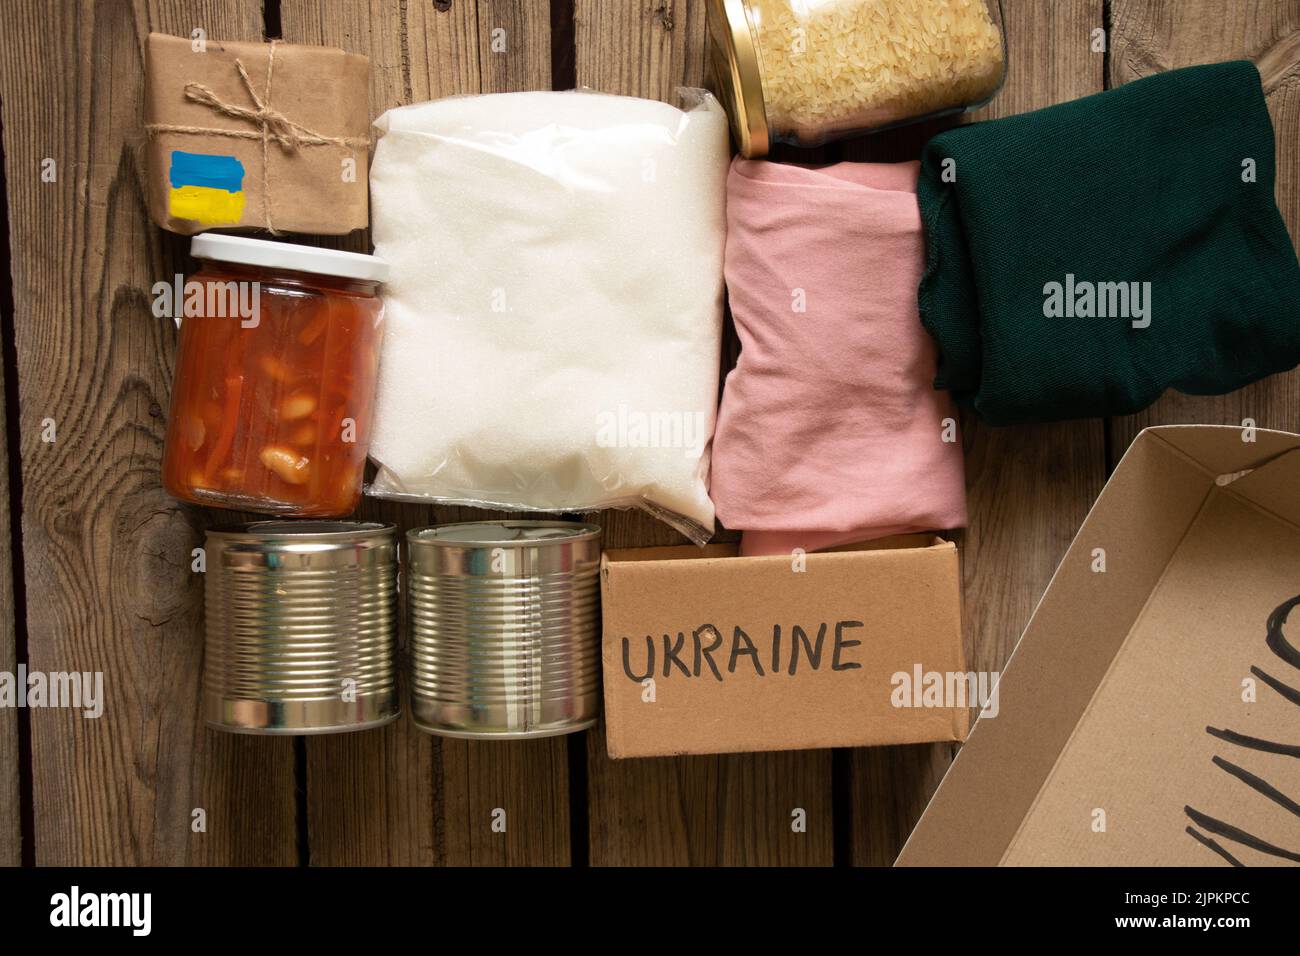 Collecte d'un kit alimentaire humanitaire pour aider les personnes qui ont souffert pendant la guerre aux mains de la Russie, mettre fin à la guerre en Ukraine, aide humanitaire 2022 Banque D'Images